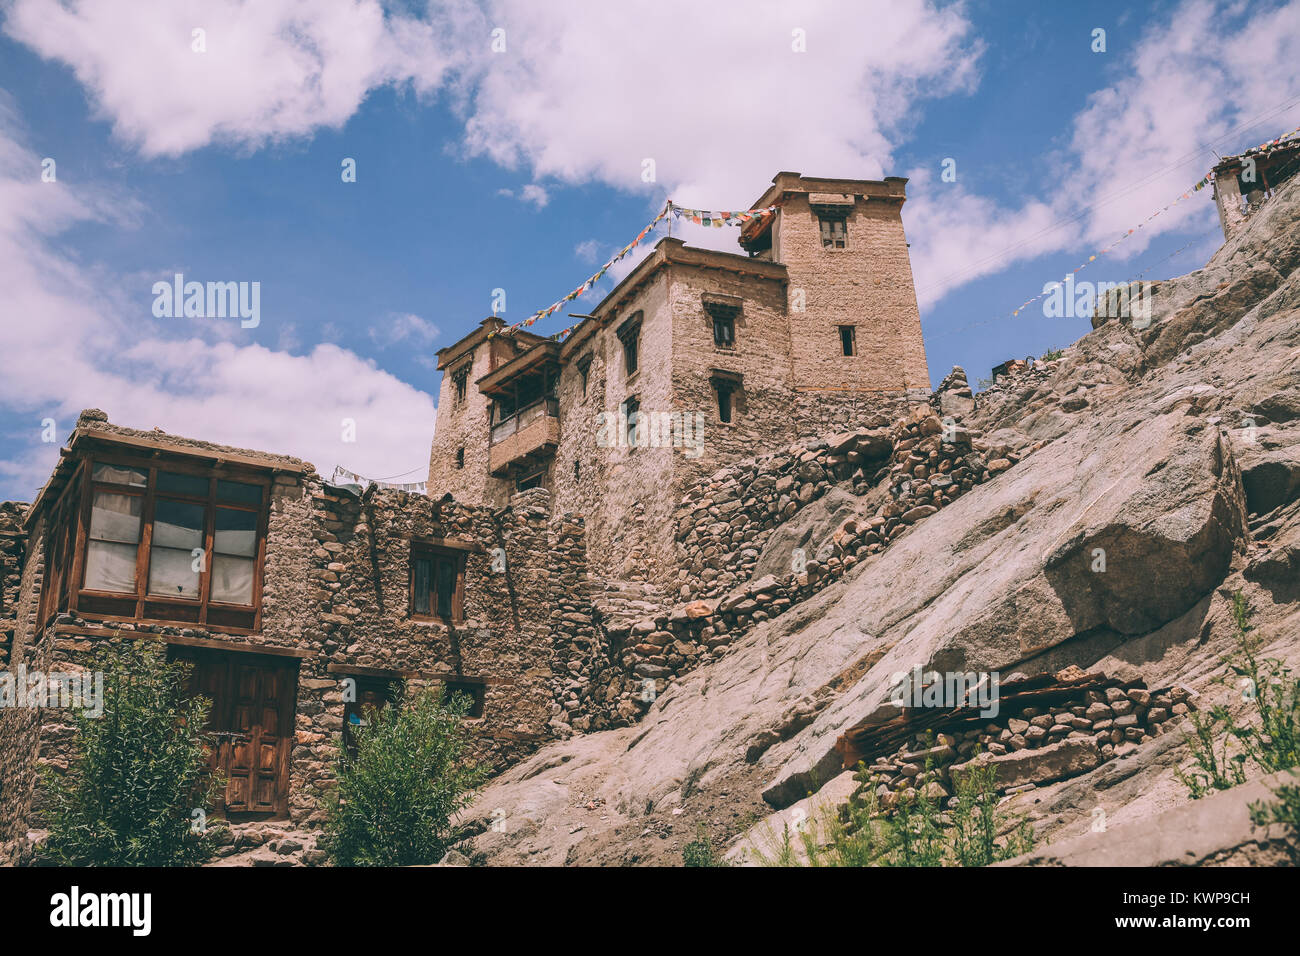 Les bâtiments traditionnels à Leh, Himalaya Indien Banque D'Images